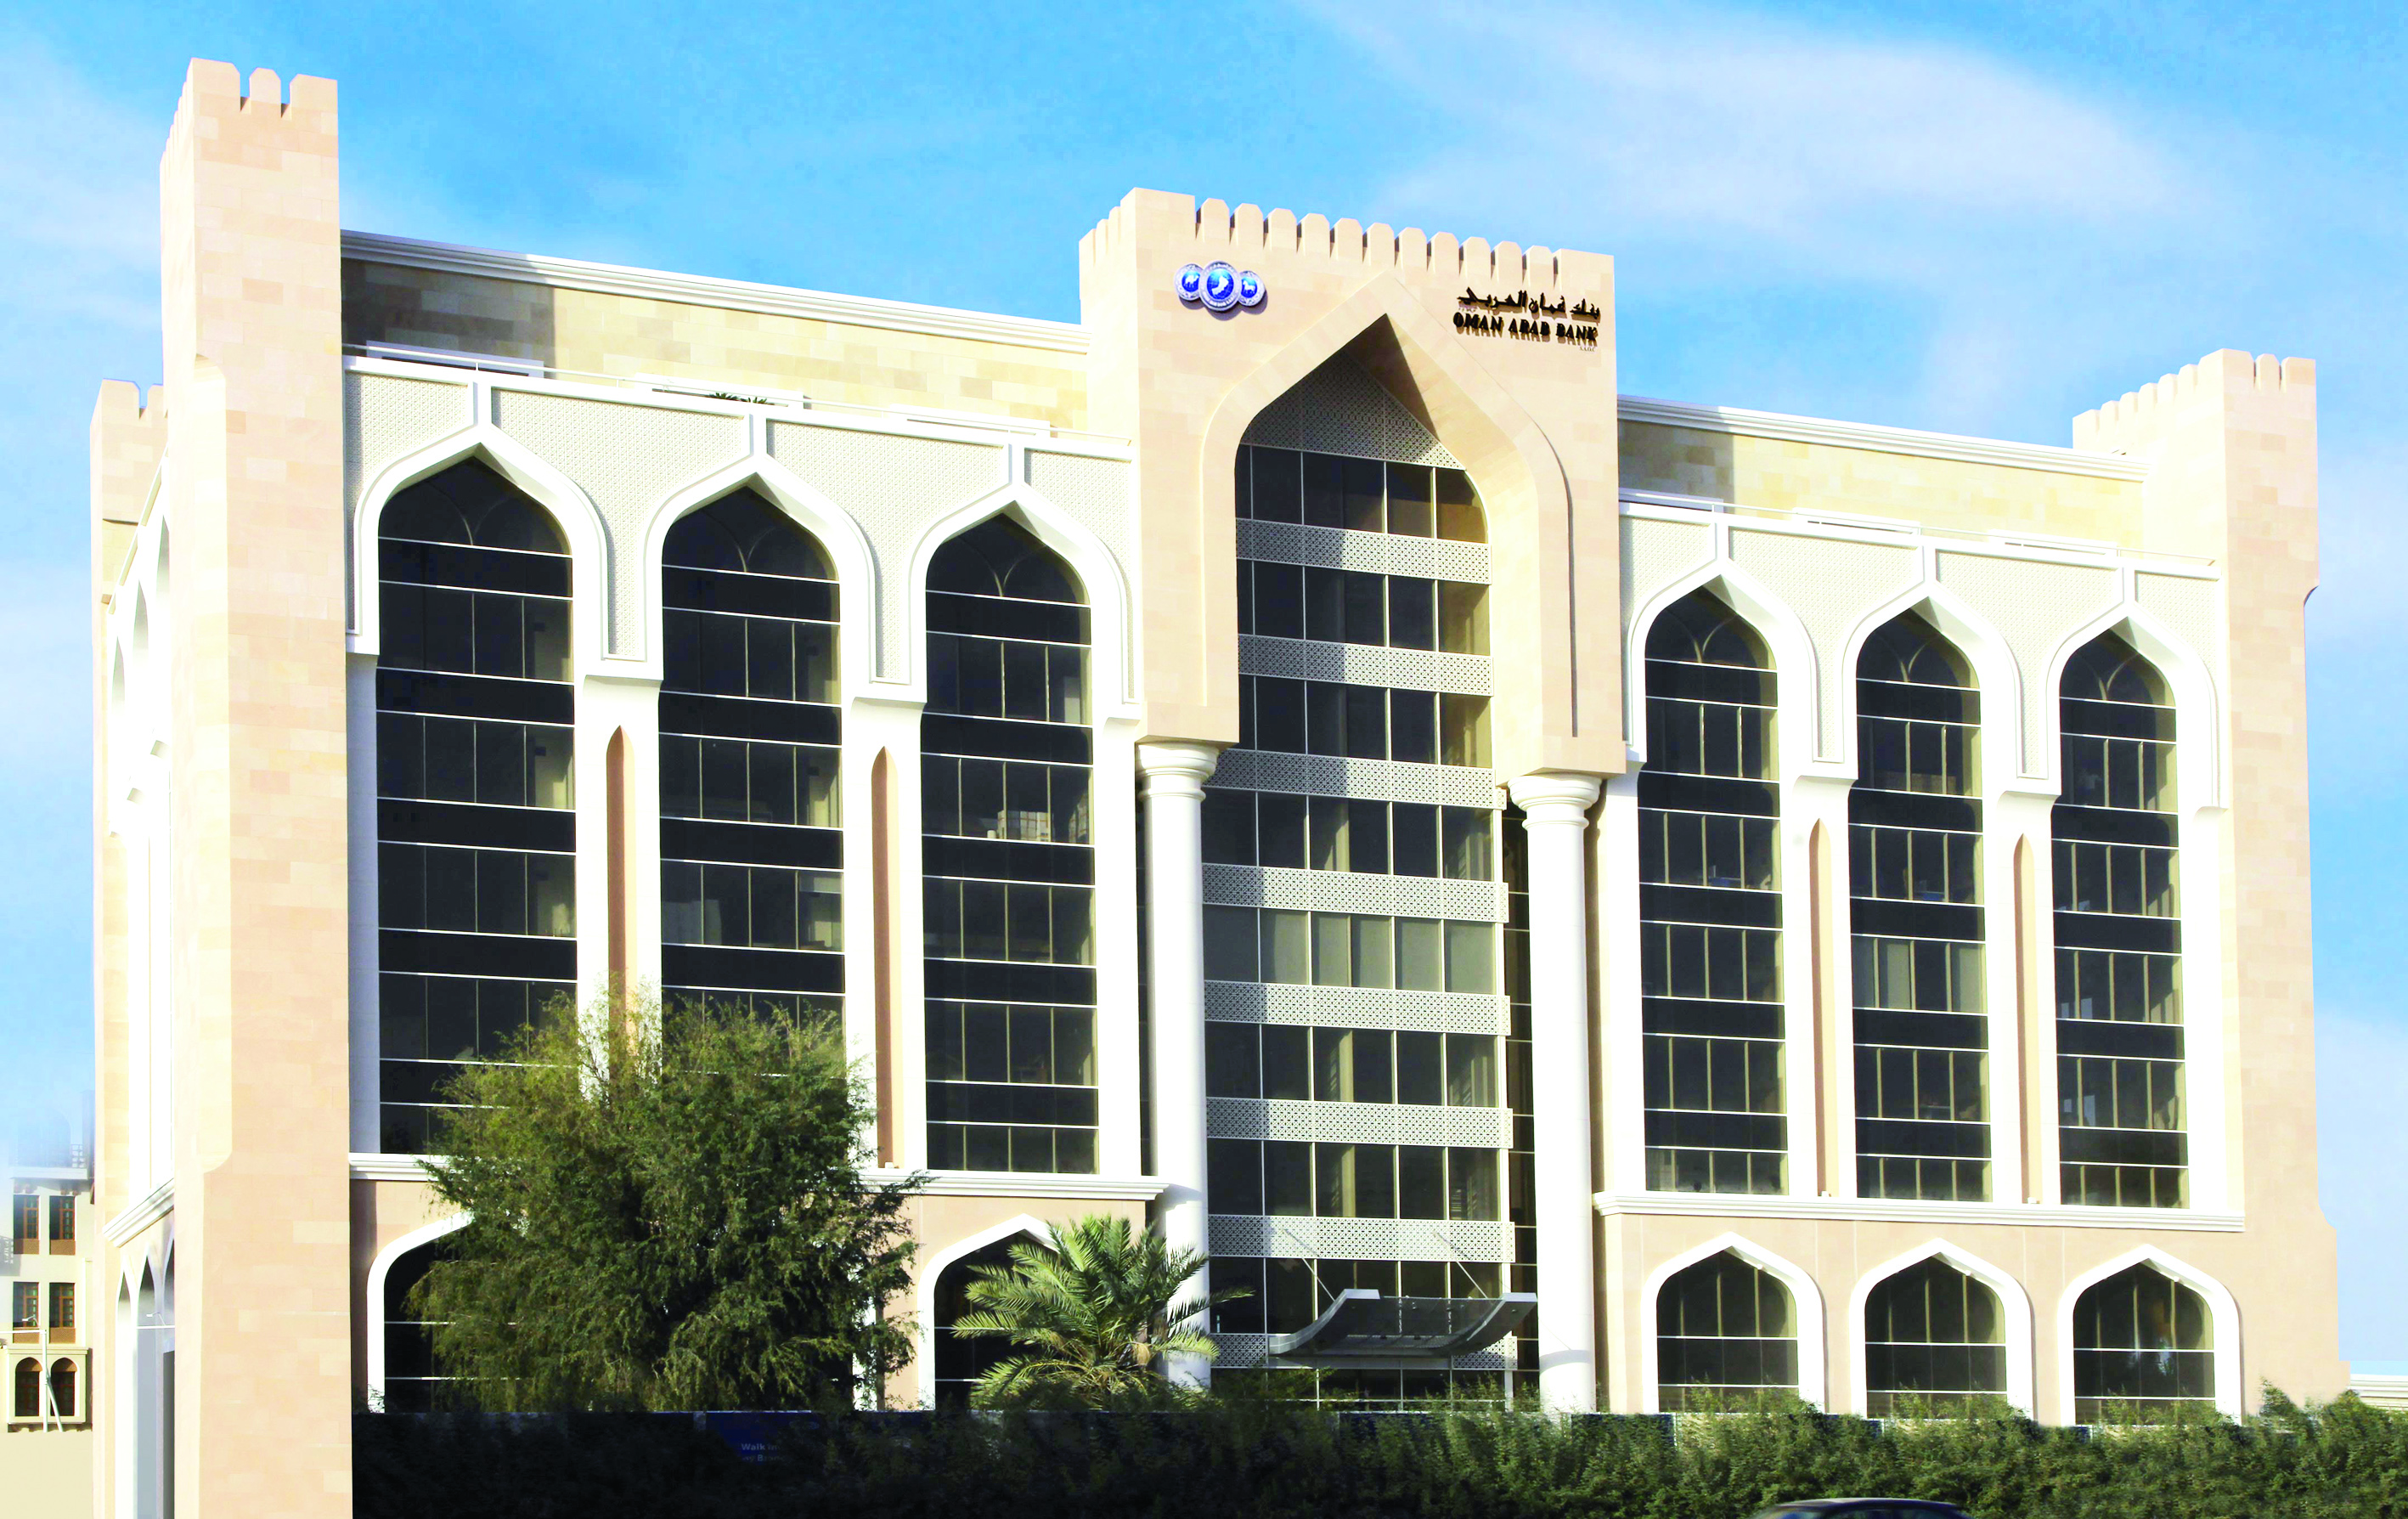 بقيمة 30 مليون ريال عماني

بنك عُمان العربي ينهي بنجاح إصدار أول سندات دائمة